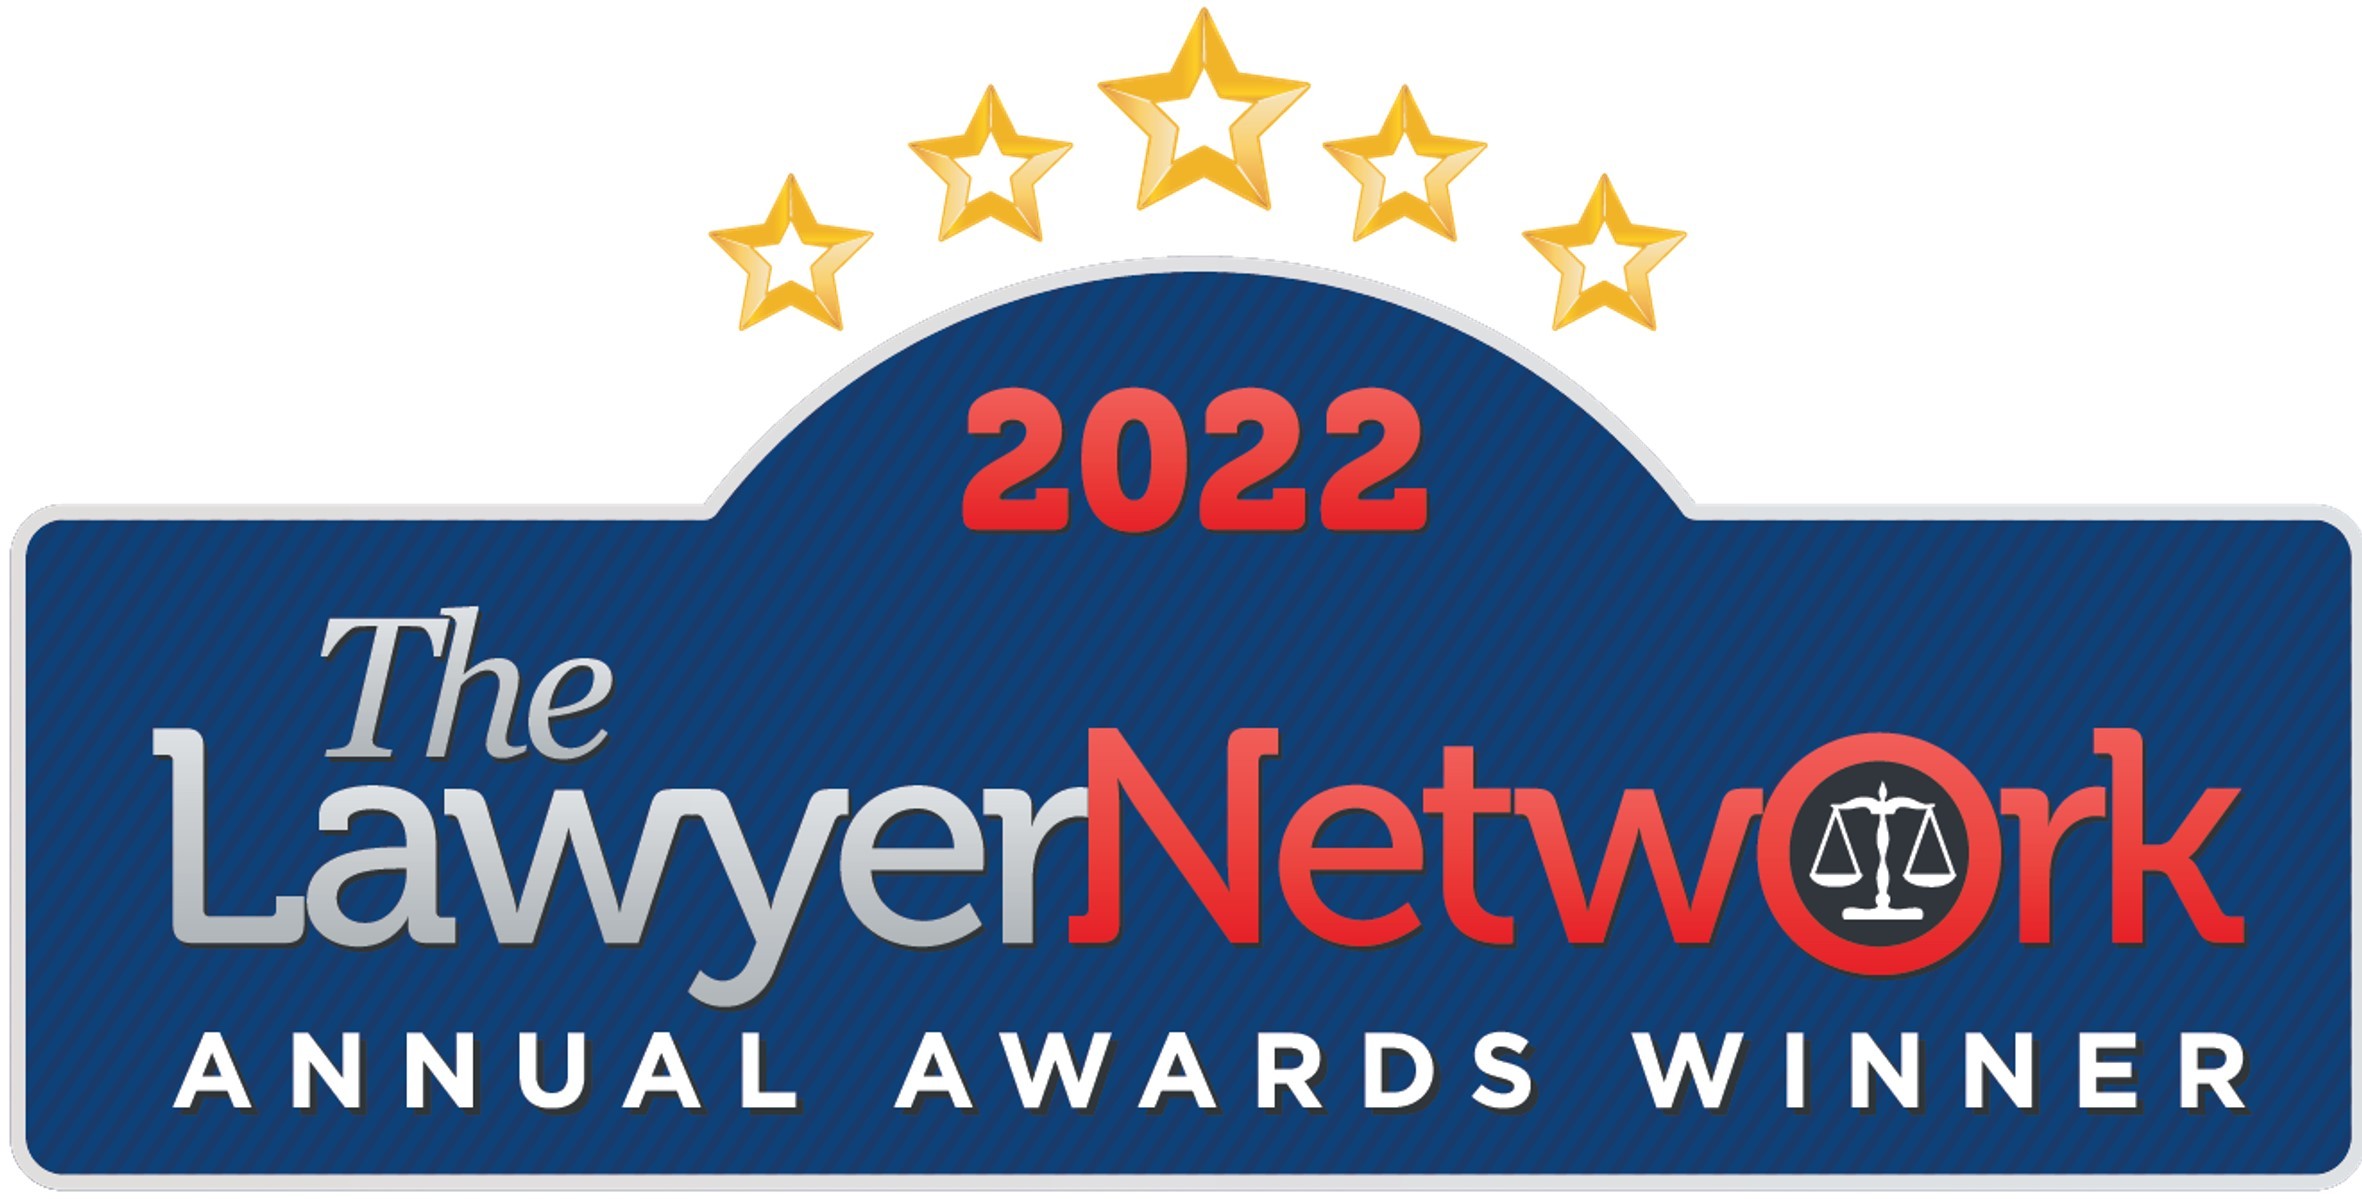 《律师网络年度大奖》 (The Lawyer Network Annual Awards) “年度并购领域香港区获奖法律专家”, 2022